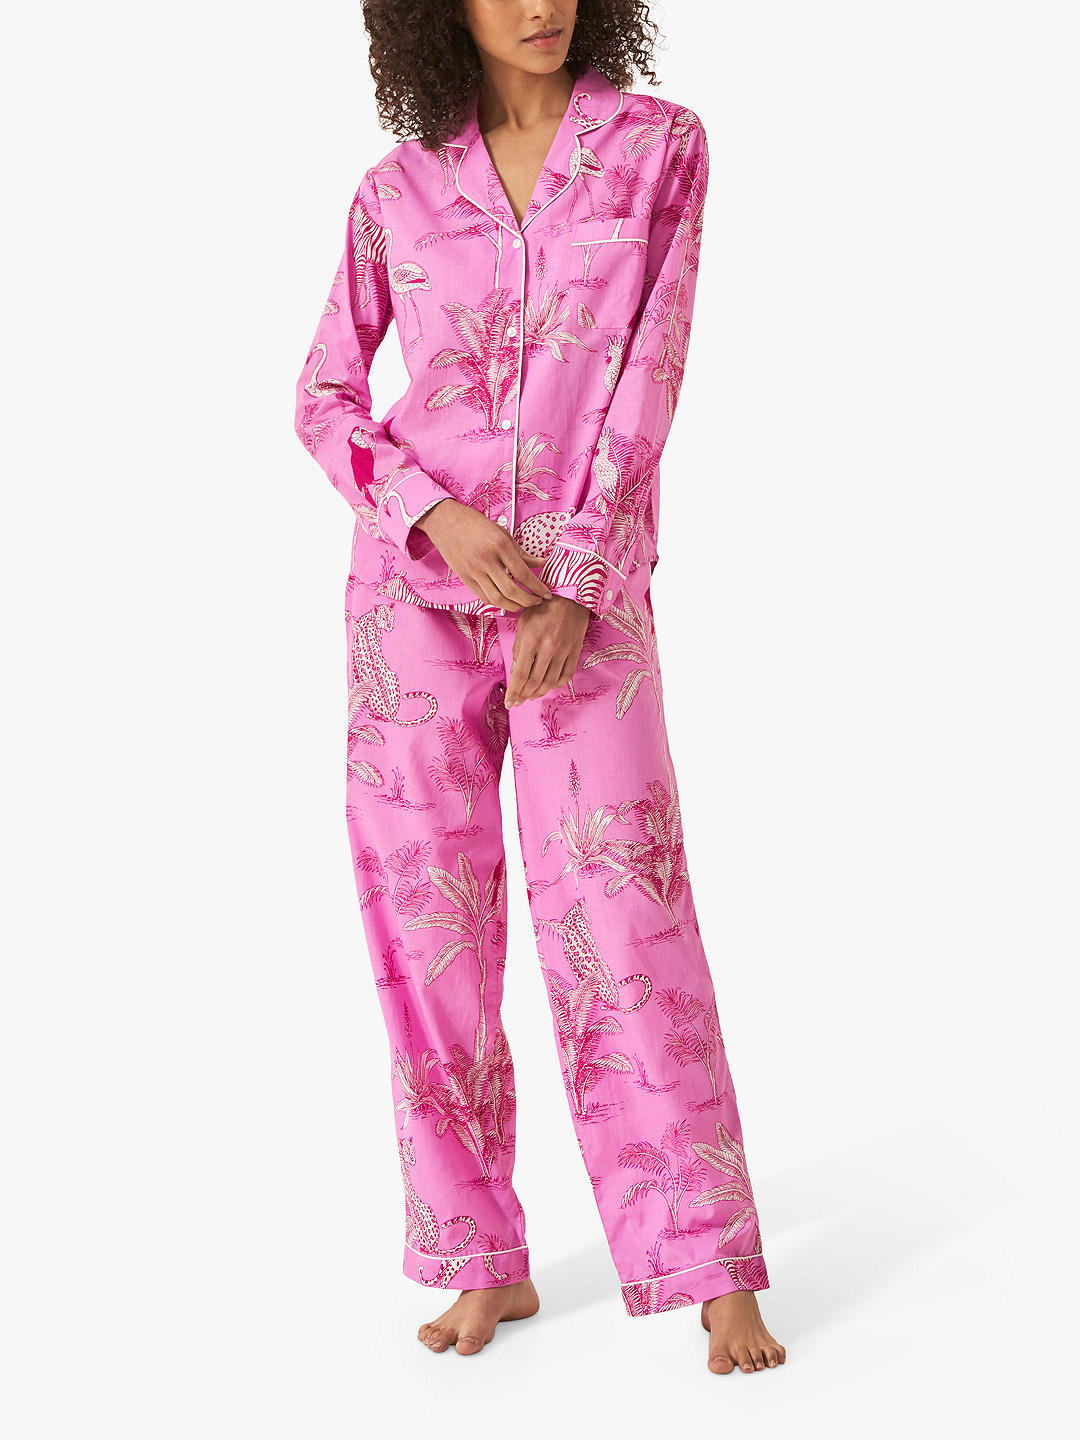 myza Botanical Jungle Organic Cotton Pyjamas, Pink at John Lewis & Partners